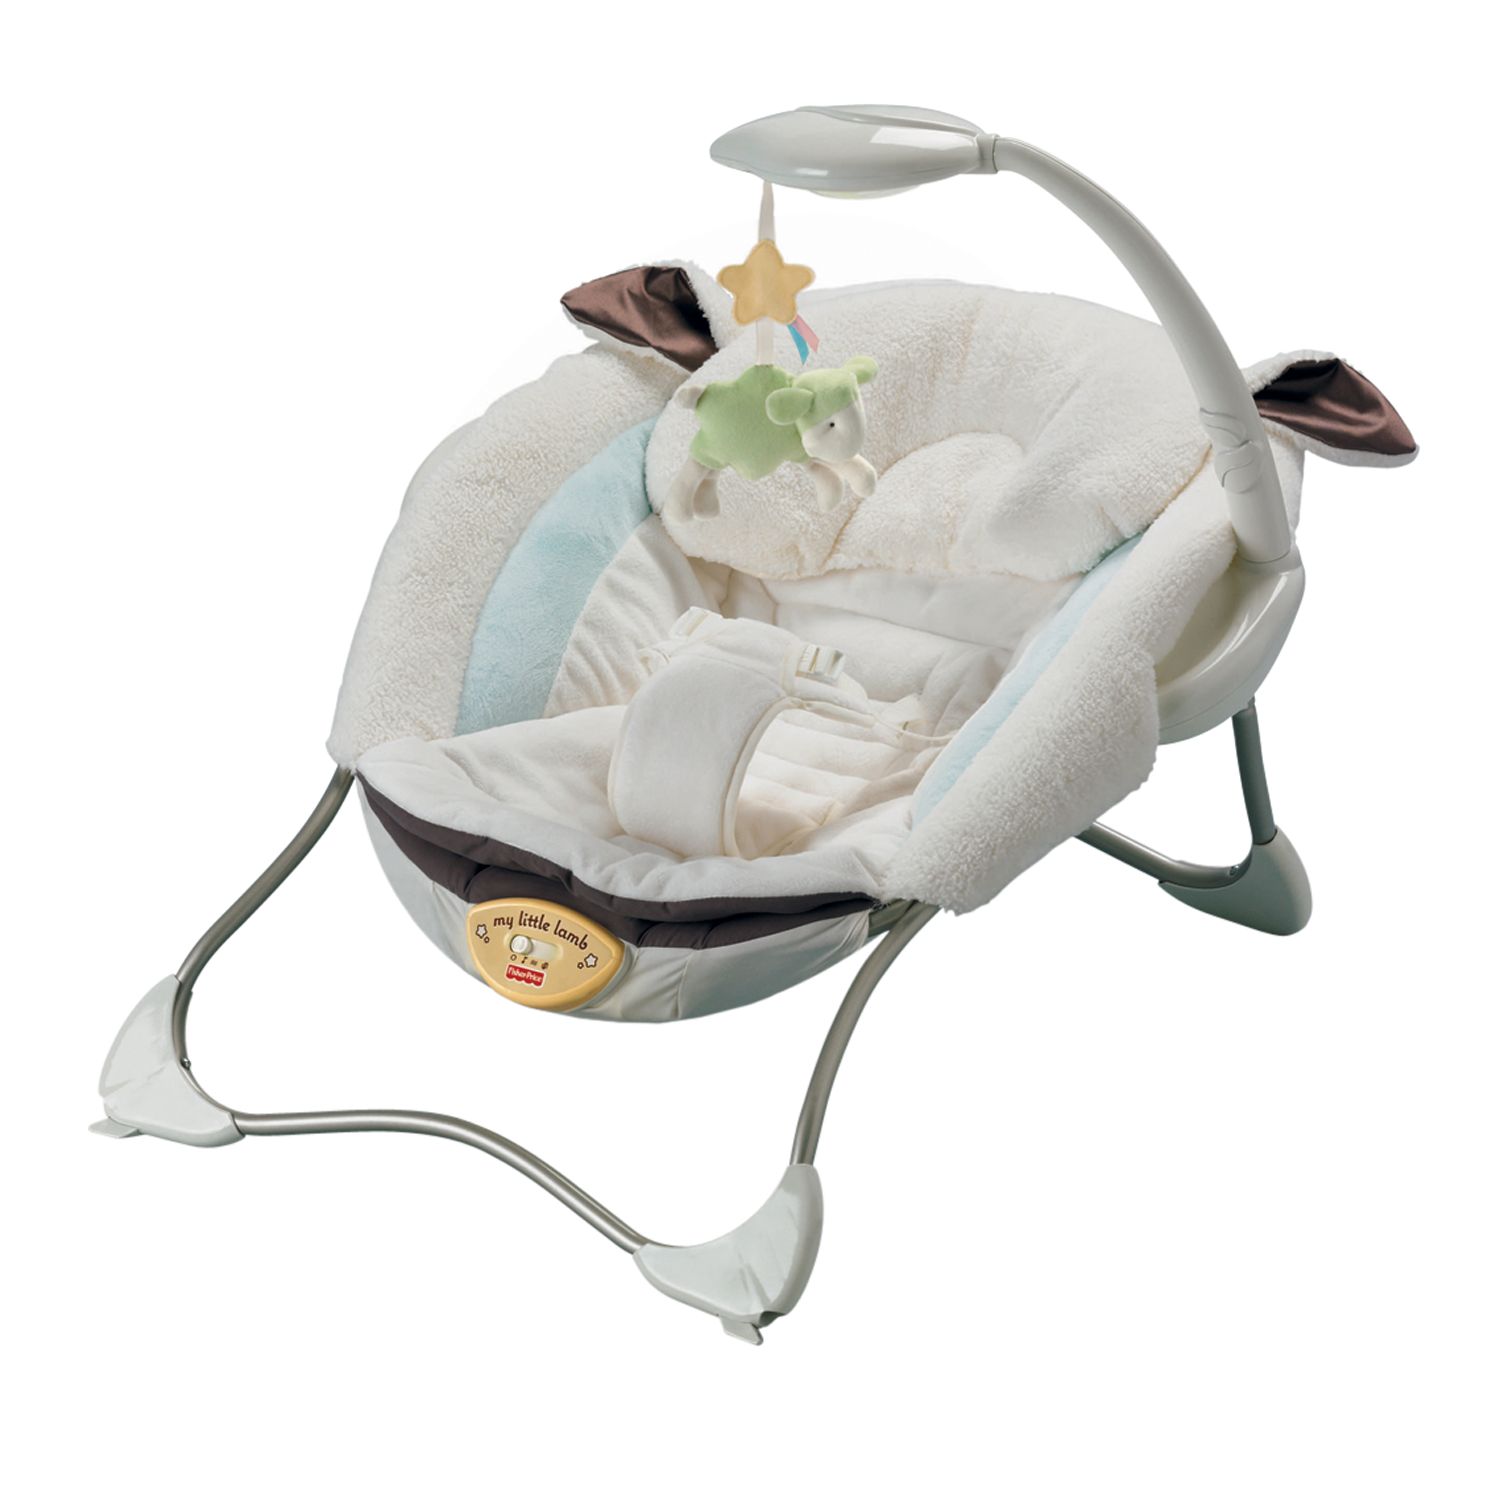 fisher price baby papasan infant seat